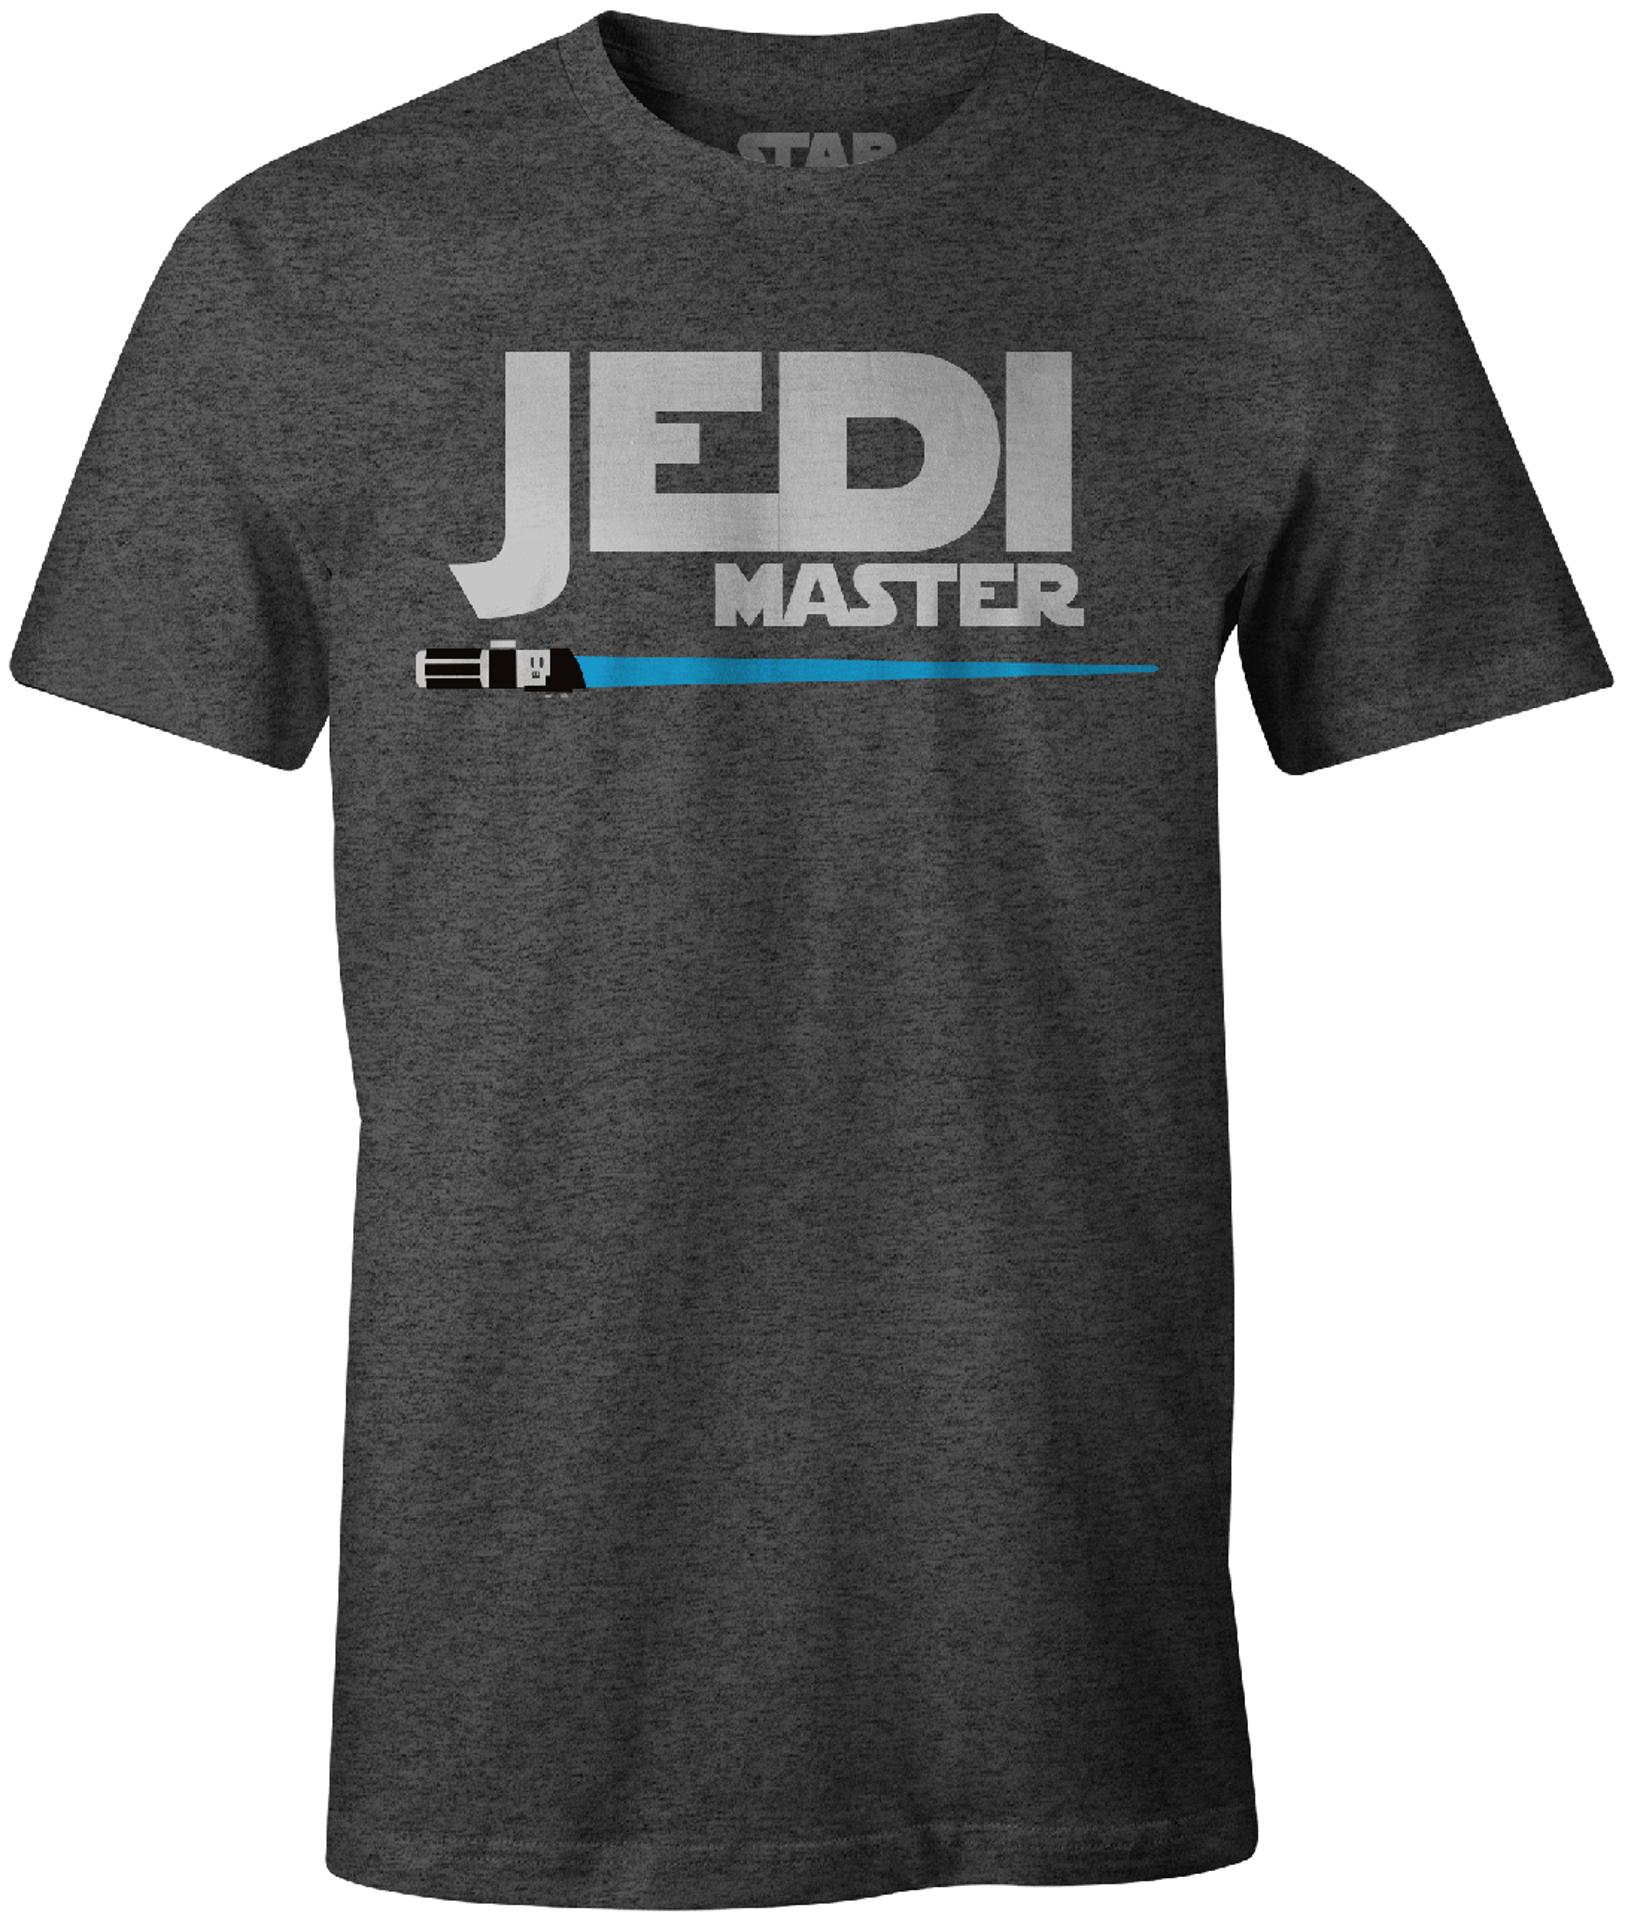 Star Wars - T-Shirt Noir Maître Jedi - XXL